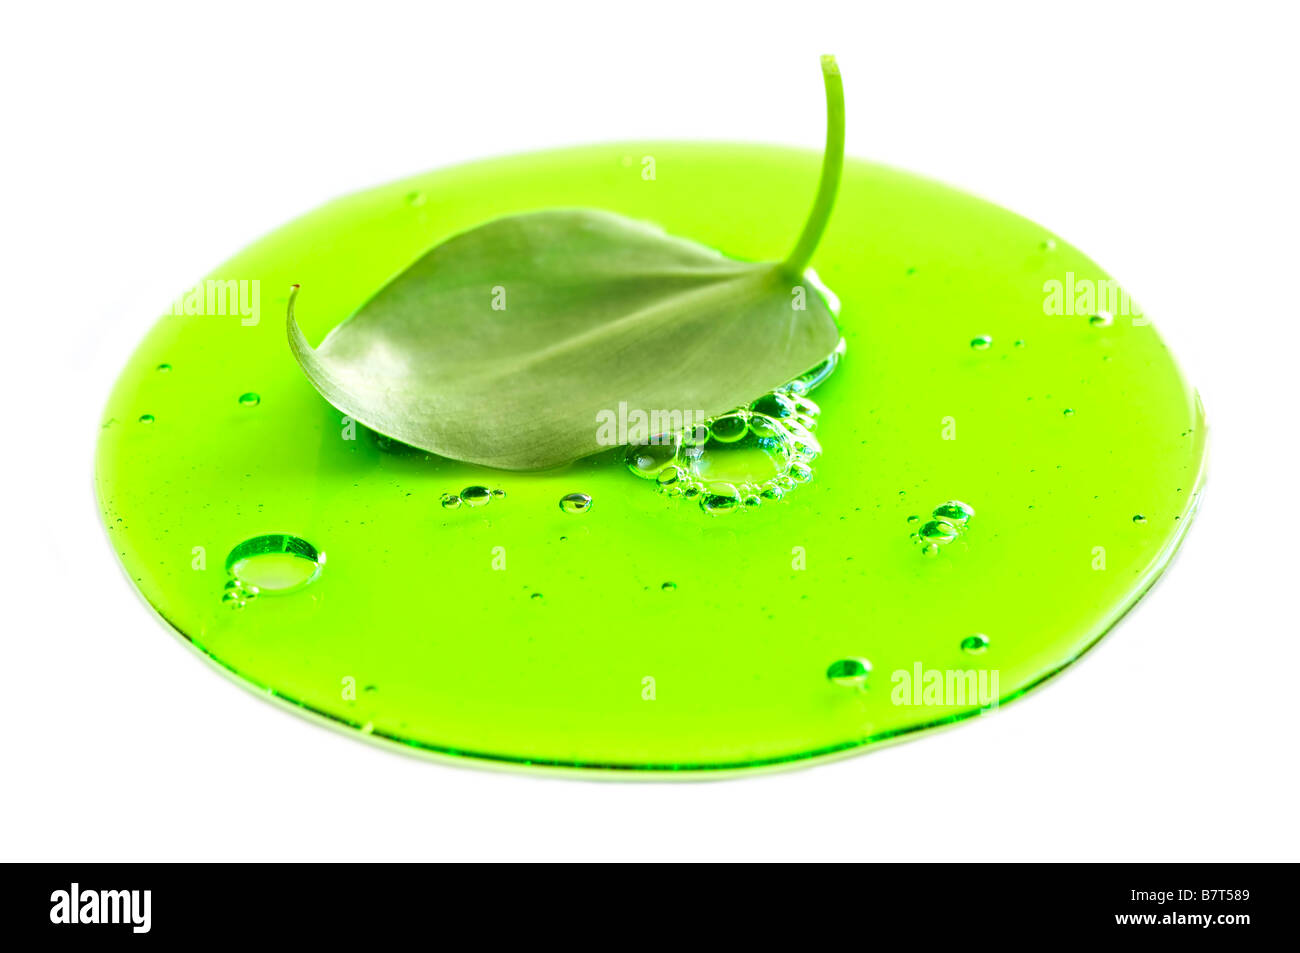 Image abstraite d'une plante à feuilles une flaque d'un liquide vert Banque D'Images